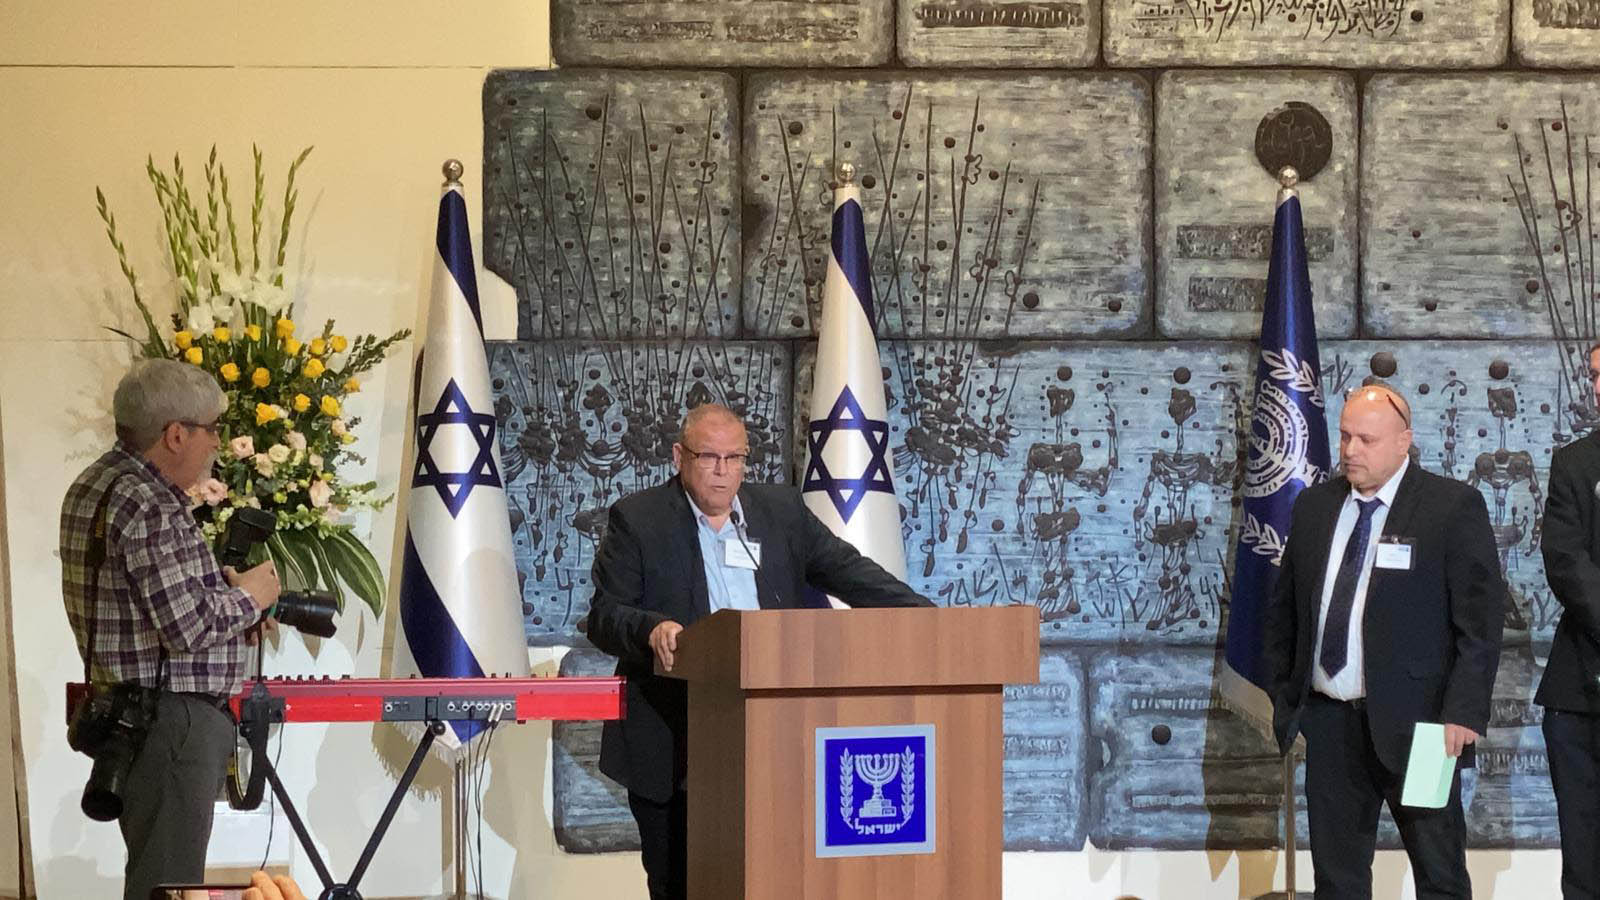 رئيس الهستدروت أرنون بار دافيد يوقع اتفاقية نيابة عن الهستدروت والعمال في إسرائيل (تصوير: المتحدث باسم الهستدروت)